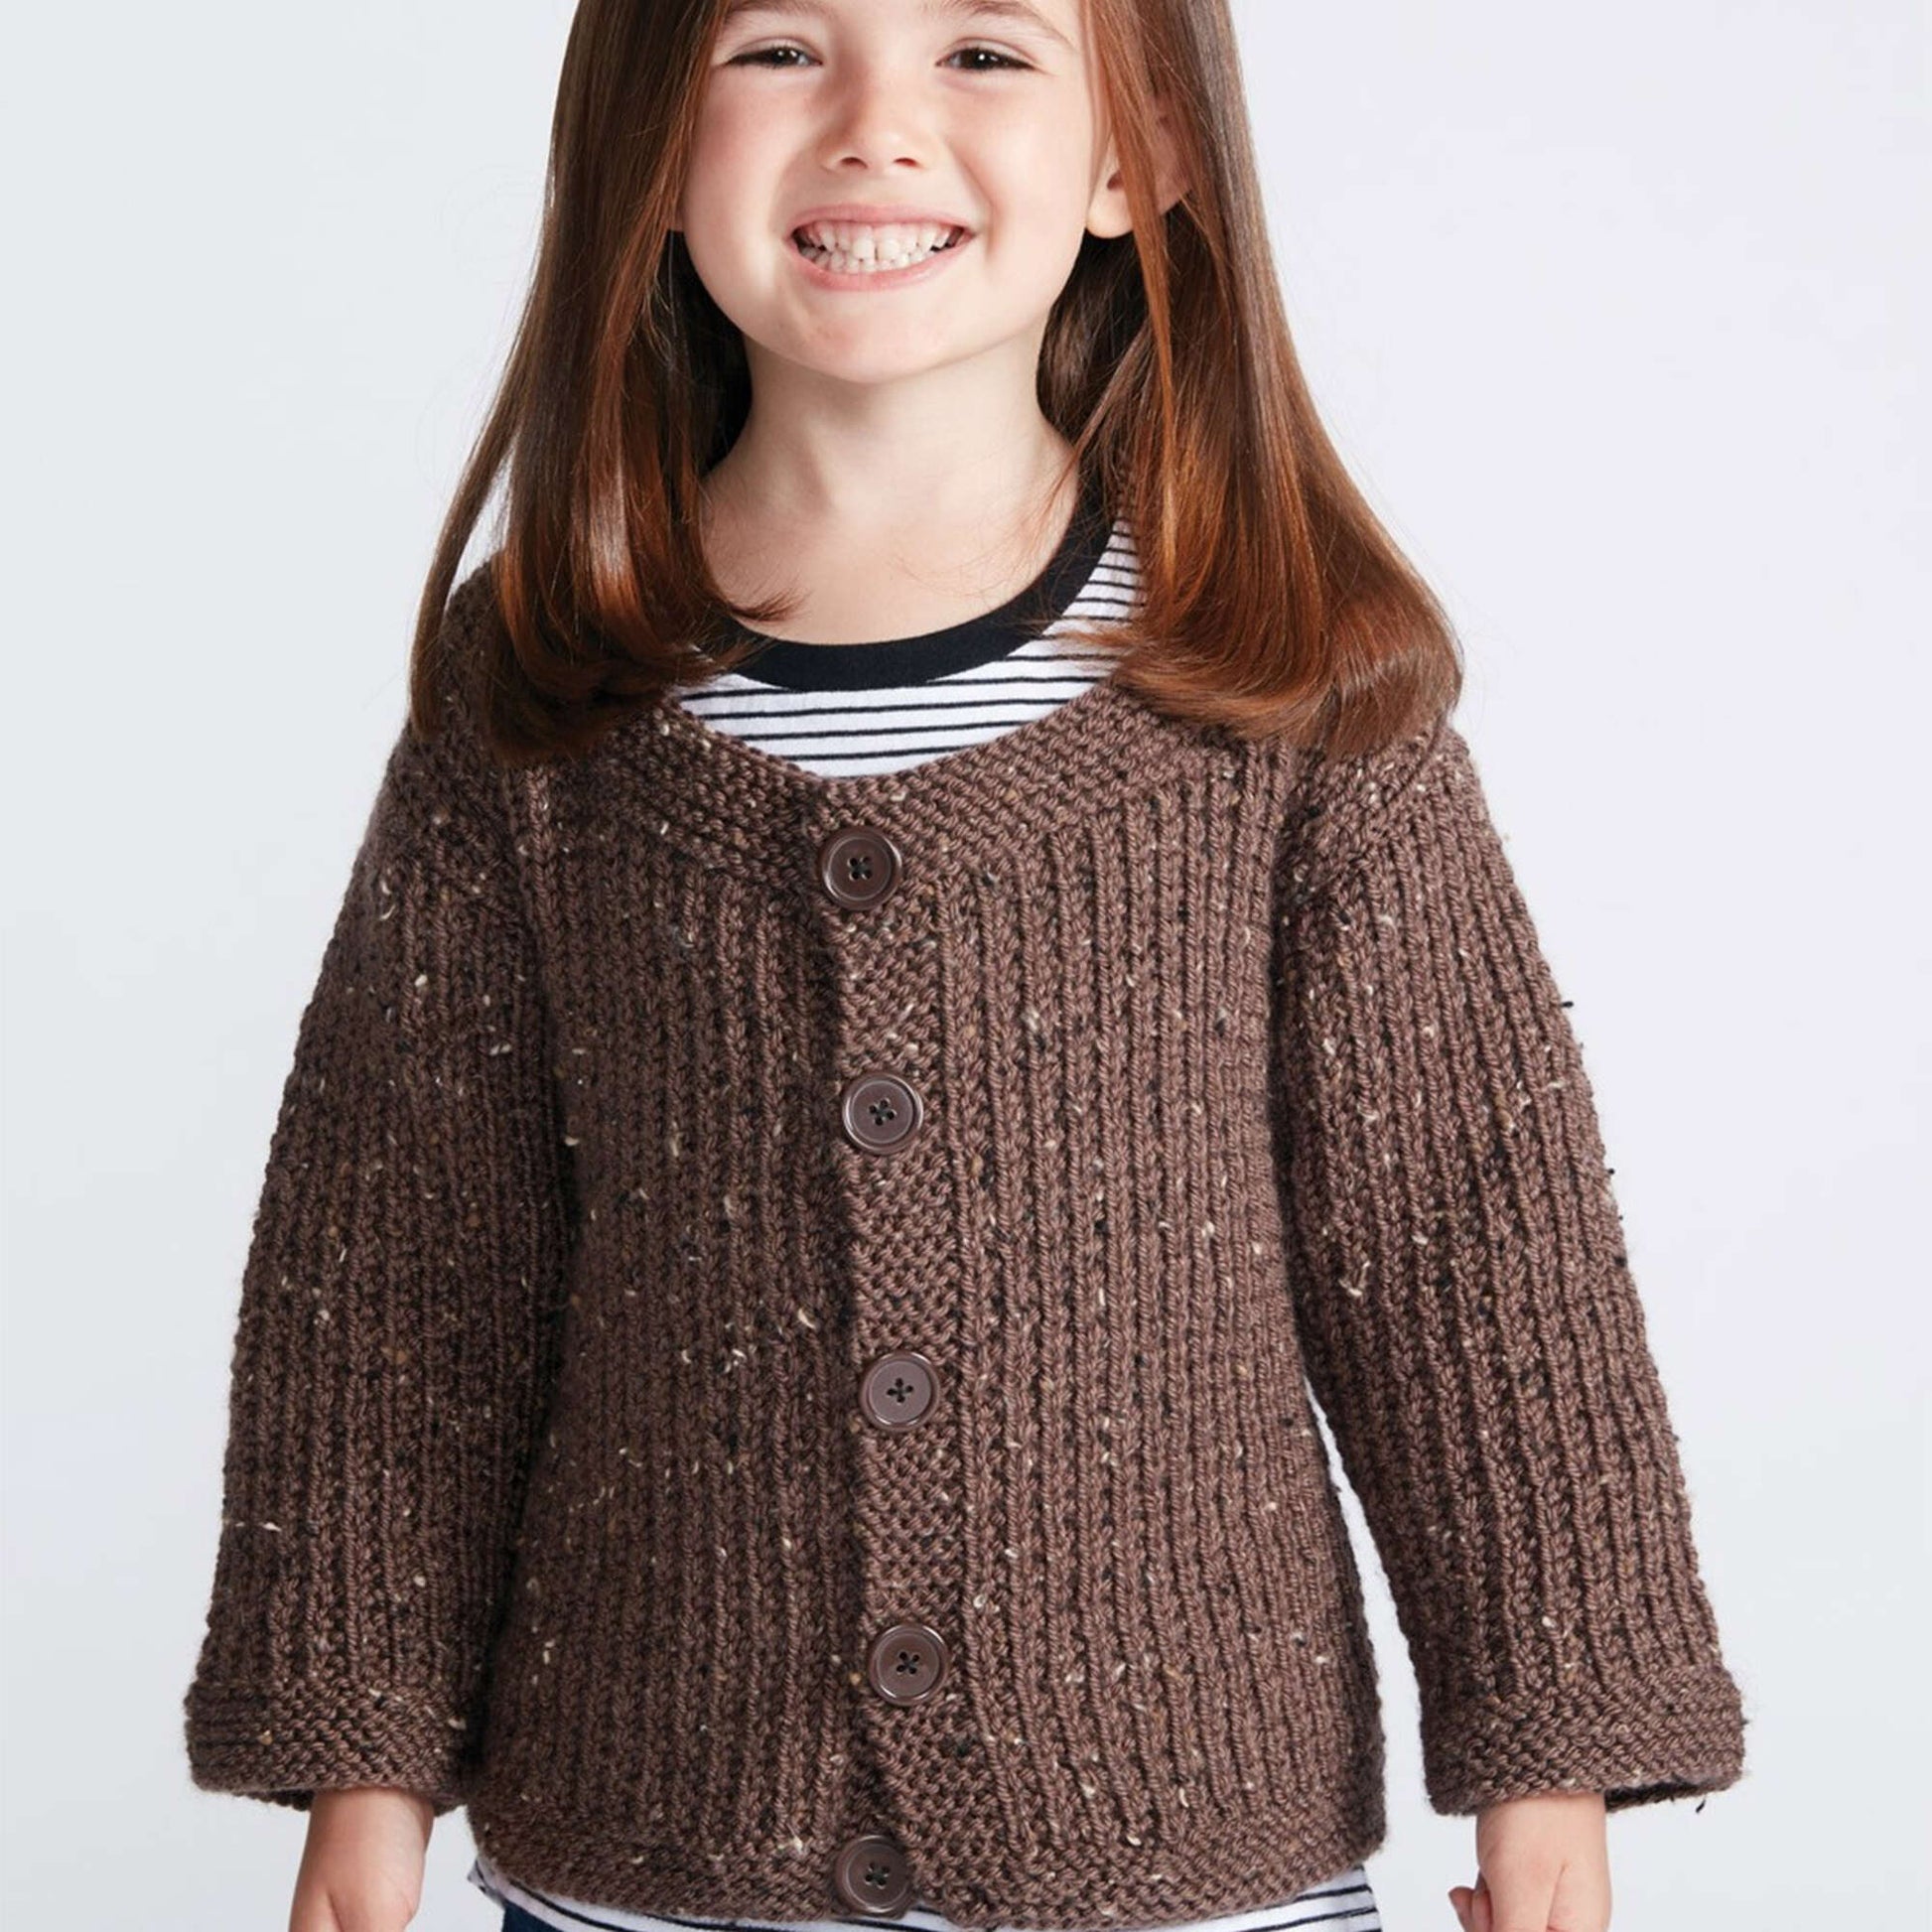 Free Caron Textured Kids Knit Cardigan Pattern